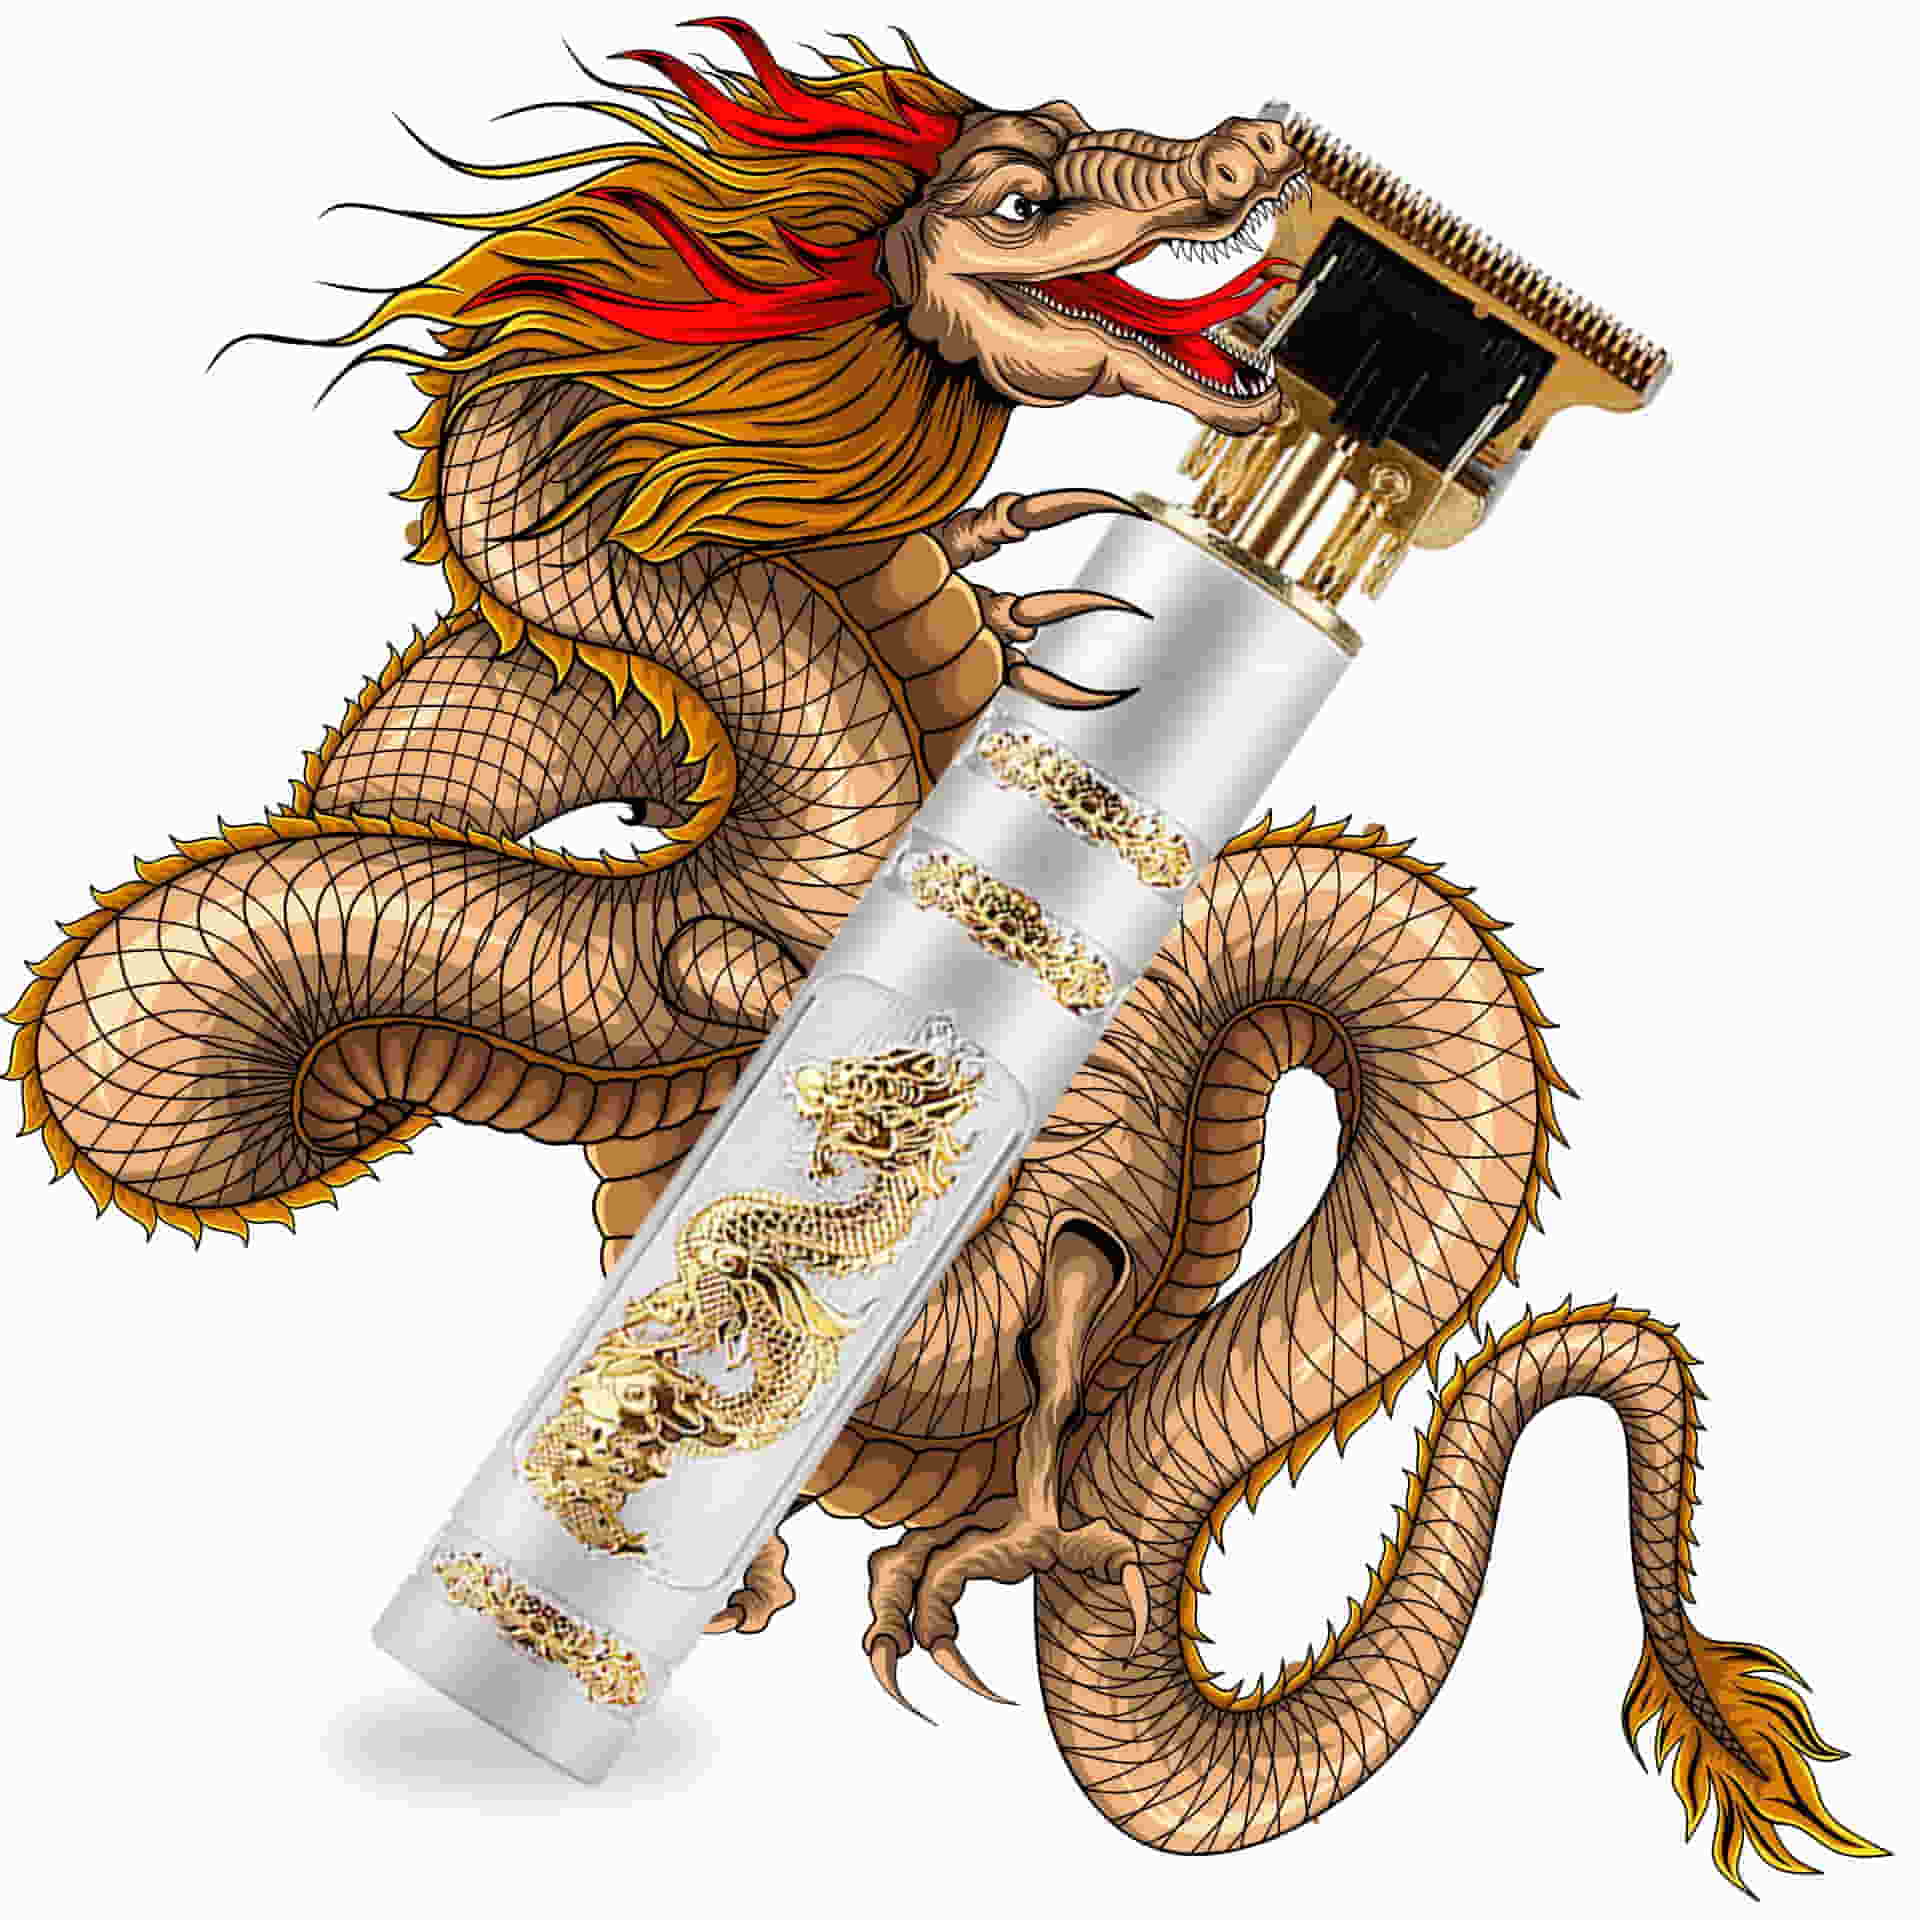 Cortapelo modelo dragon